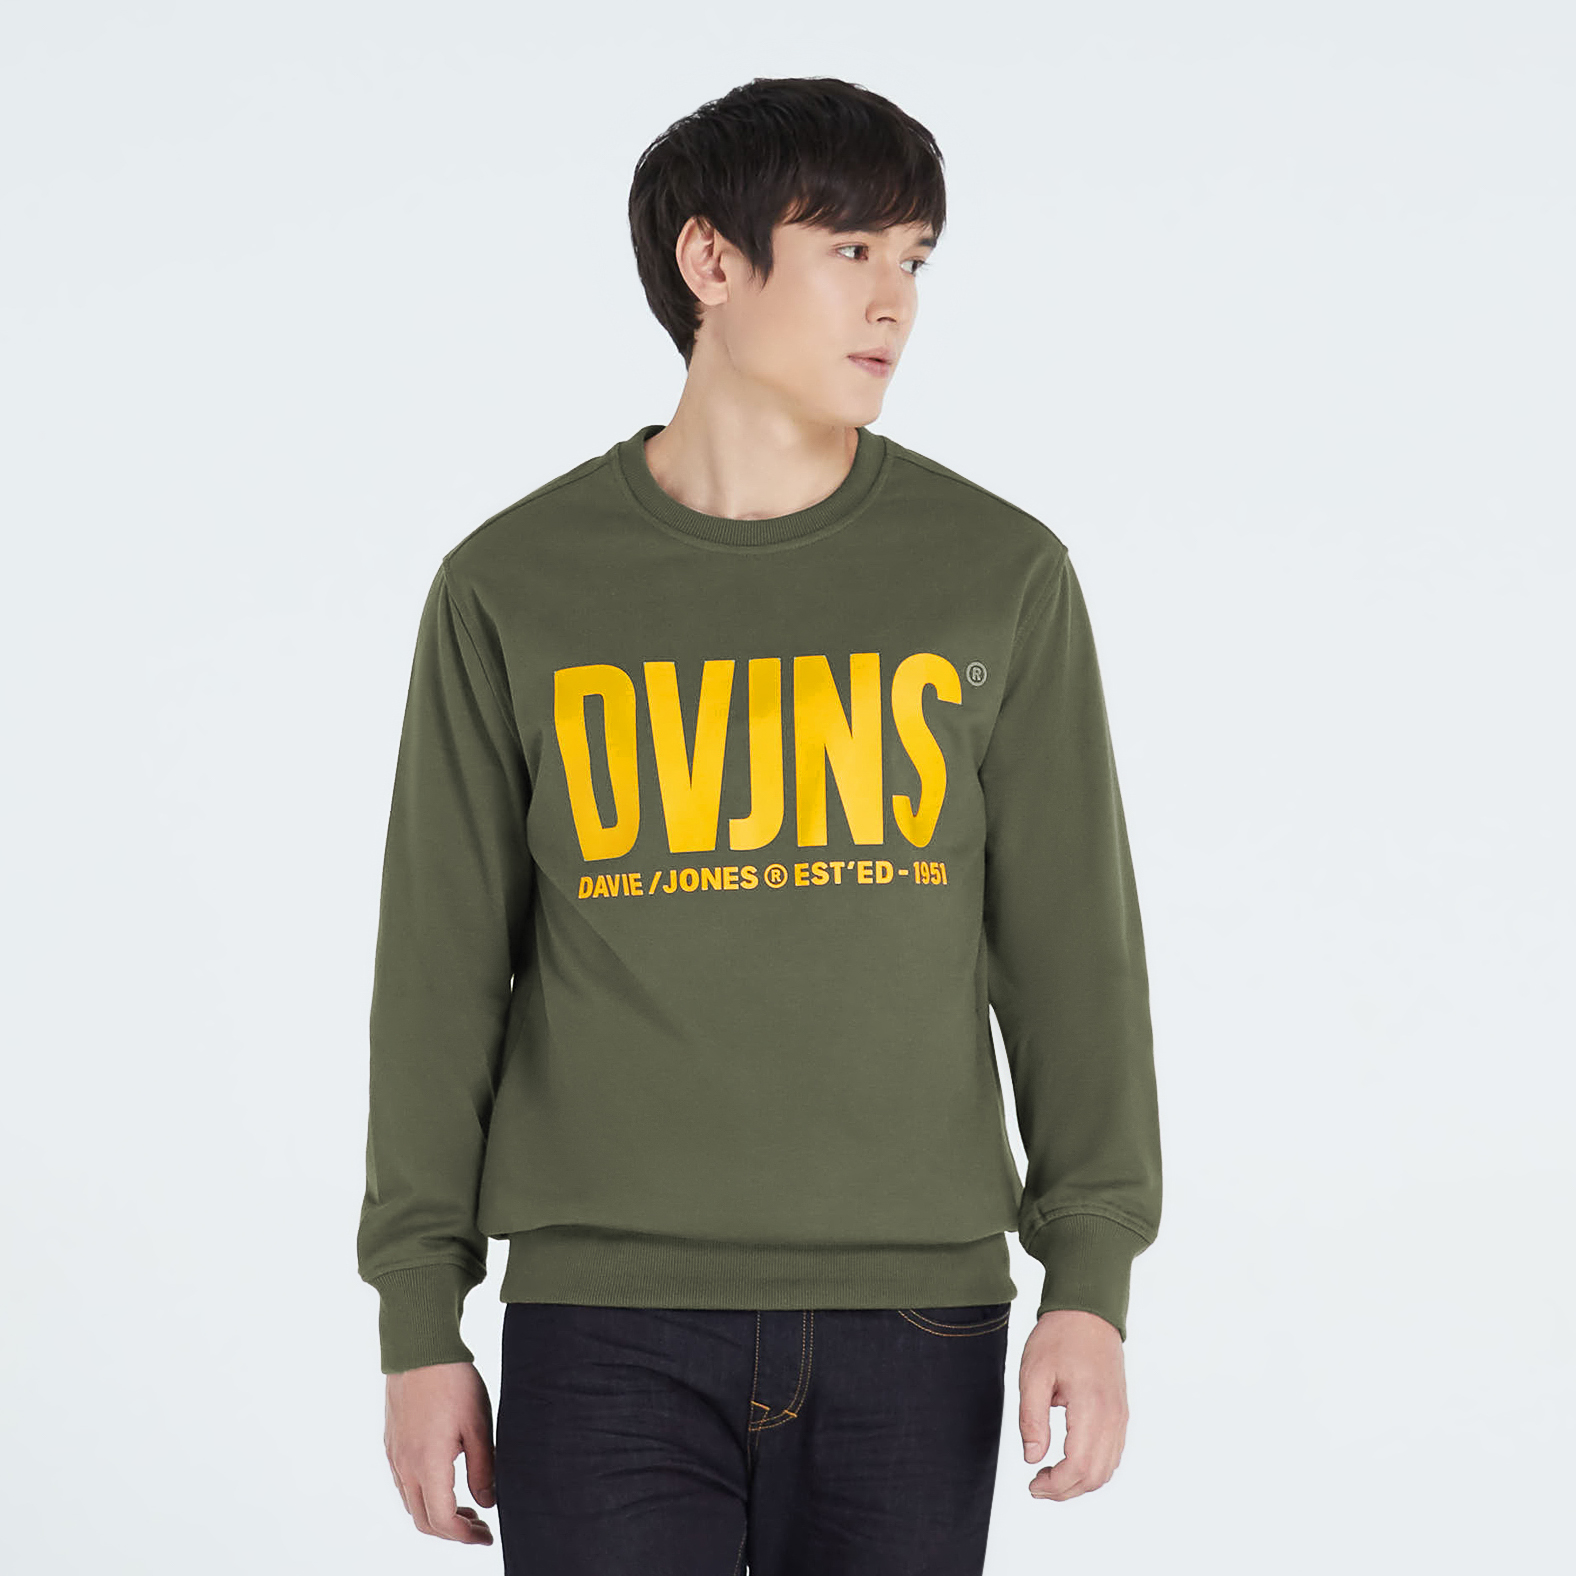 DAVIE JONES เสื้อสเวตเตอร์ สเวตเชิ้ต พิมพ์ลายโลโก้ สีกรม สีเทา สีเขียว สีเหลือง Logo Sweater SW0003NV GY GR CD YE